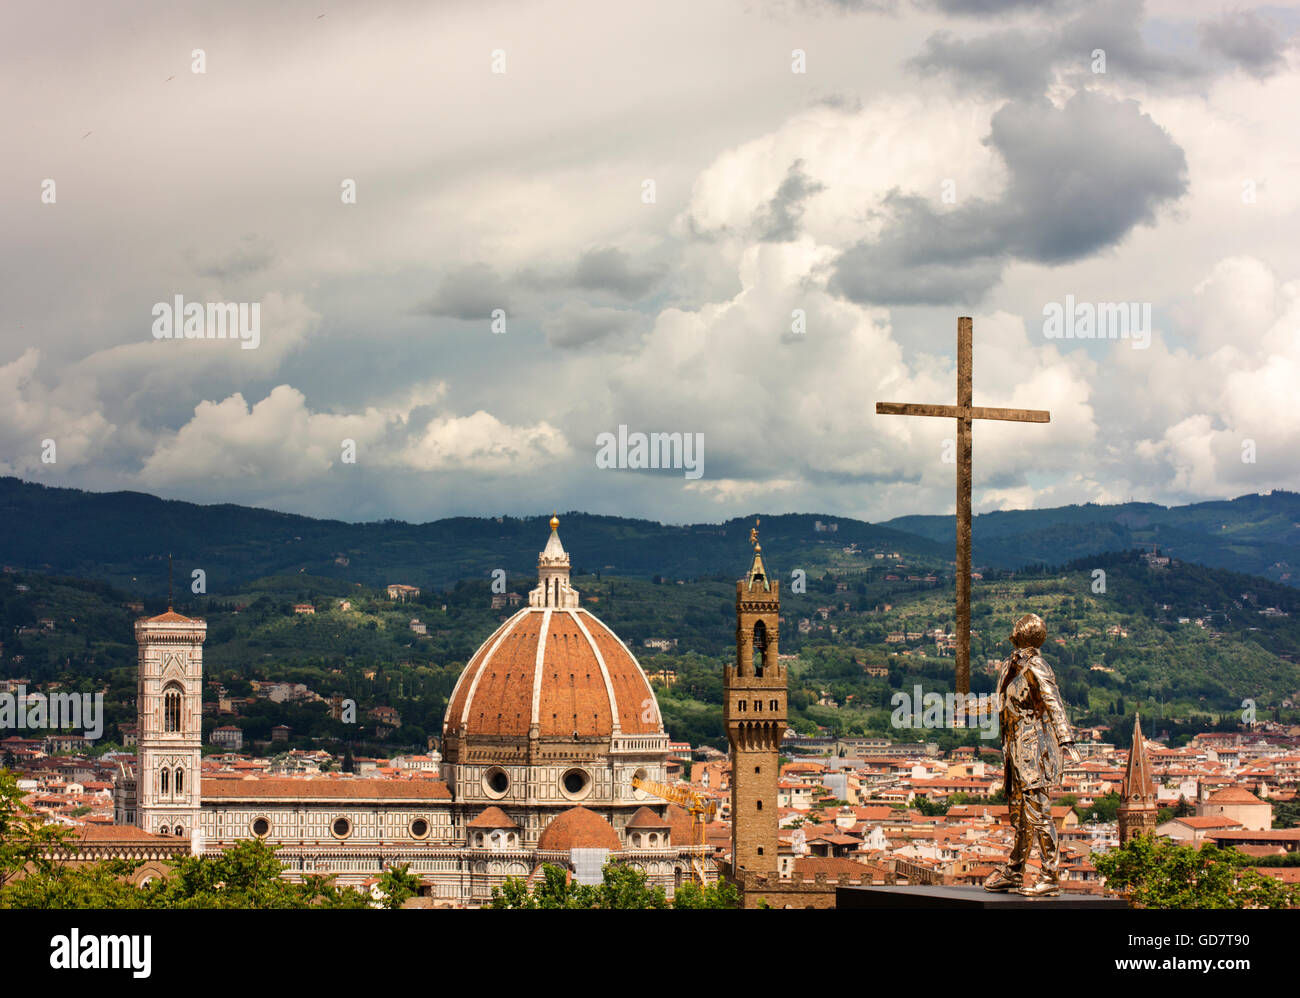 Kathedrale von Florenz, Il Duomo und eine zeitgenössische Skulptur, der Mann, der das Kreuz von Jan Fabre trägt.  Blick vom Fort Belvedere. Stockfoto